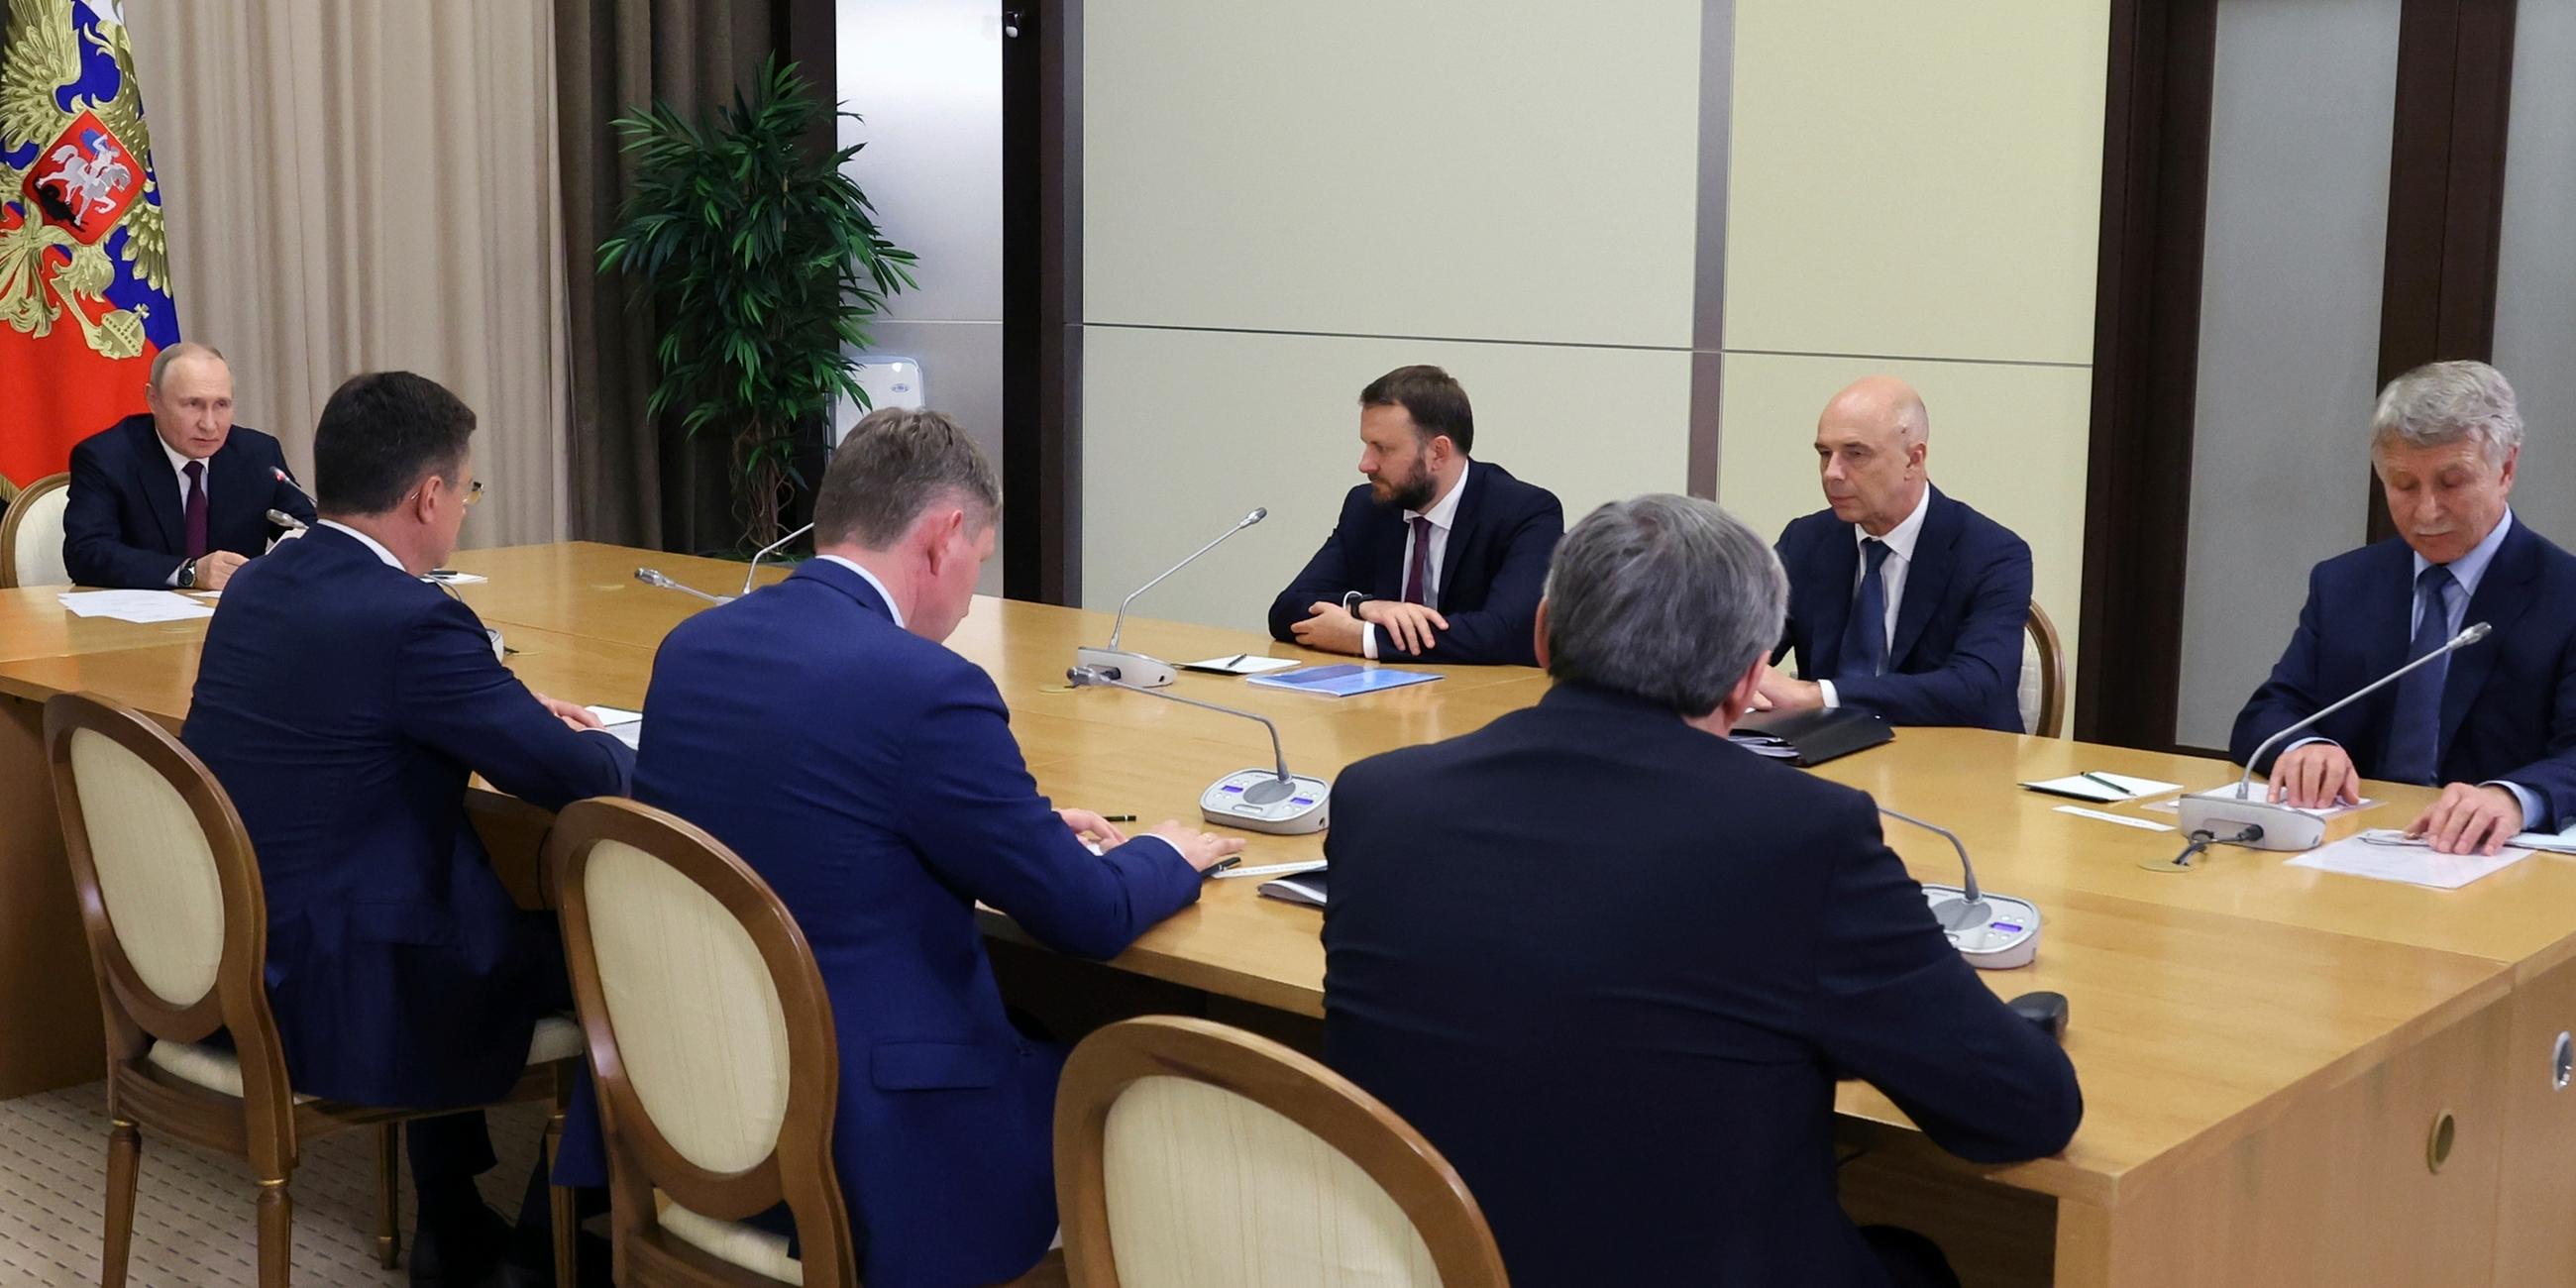 Putin und seine Delegation am Tisch.